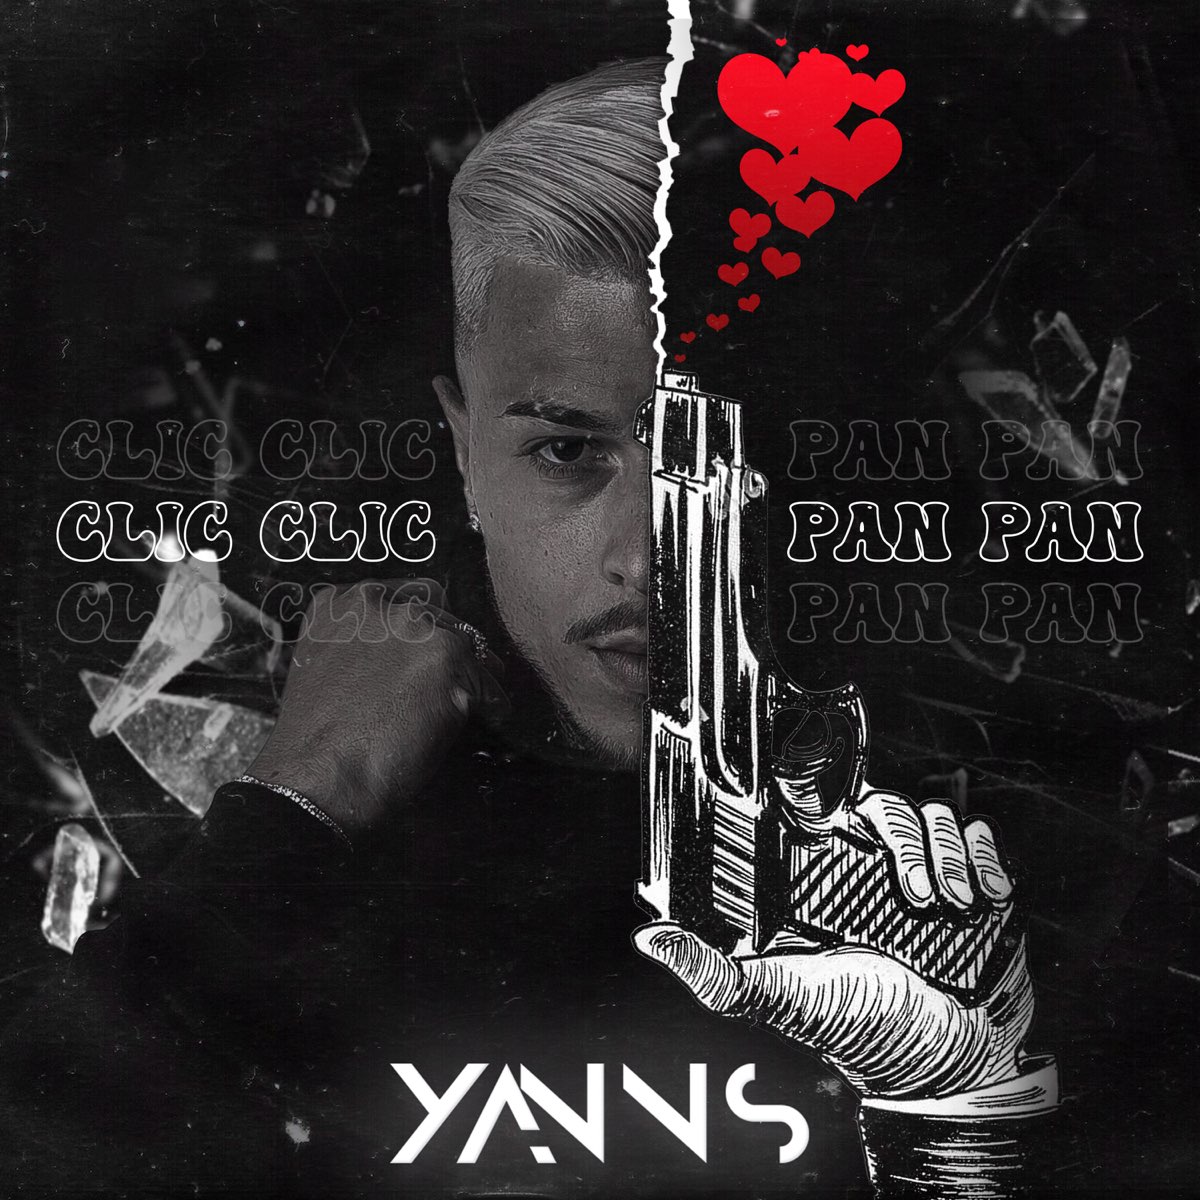 Clic clic pan pan yan